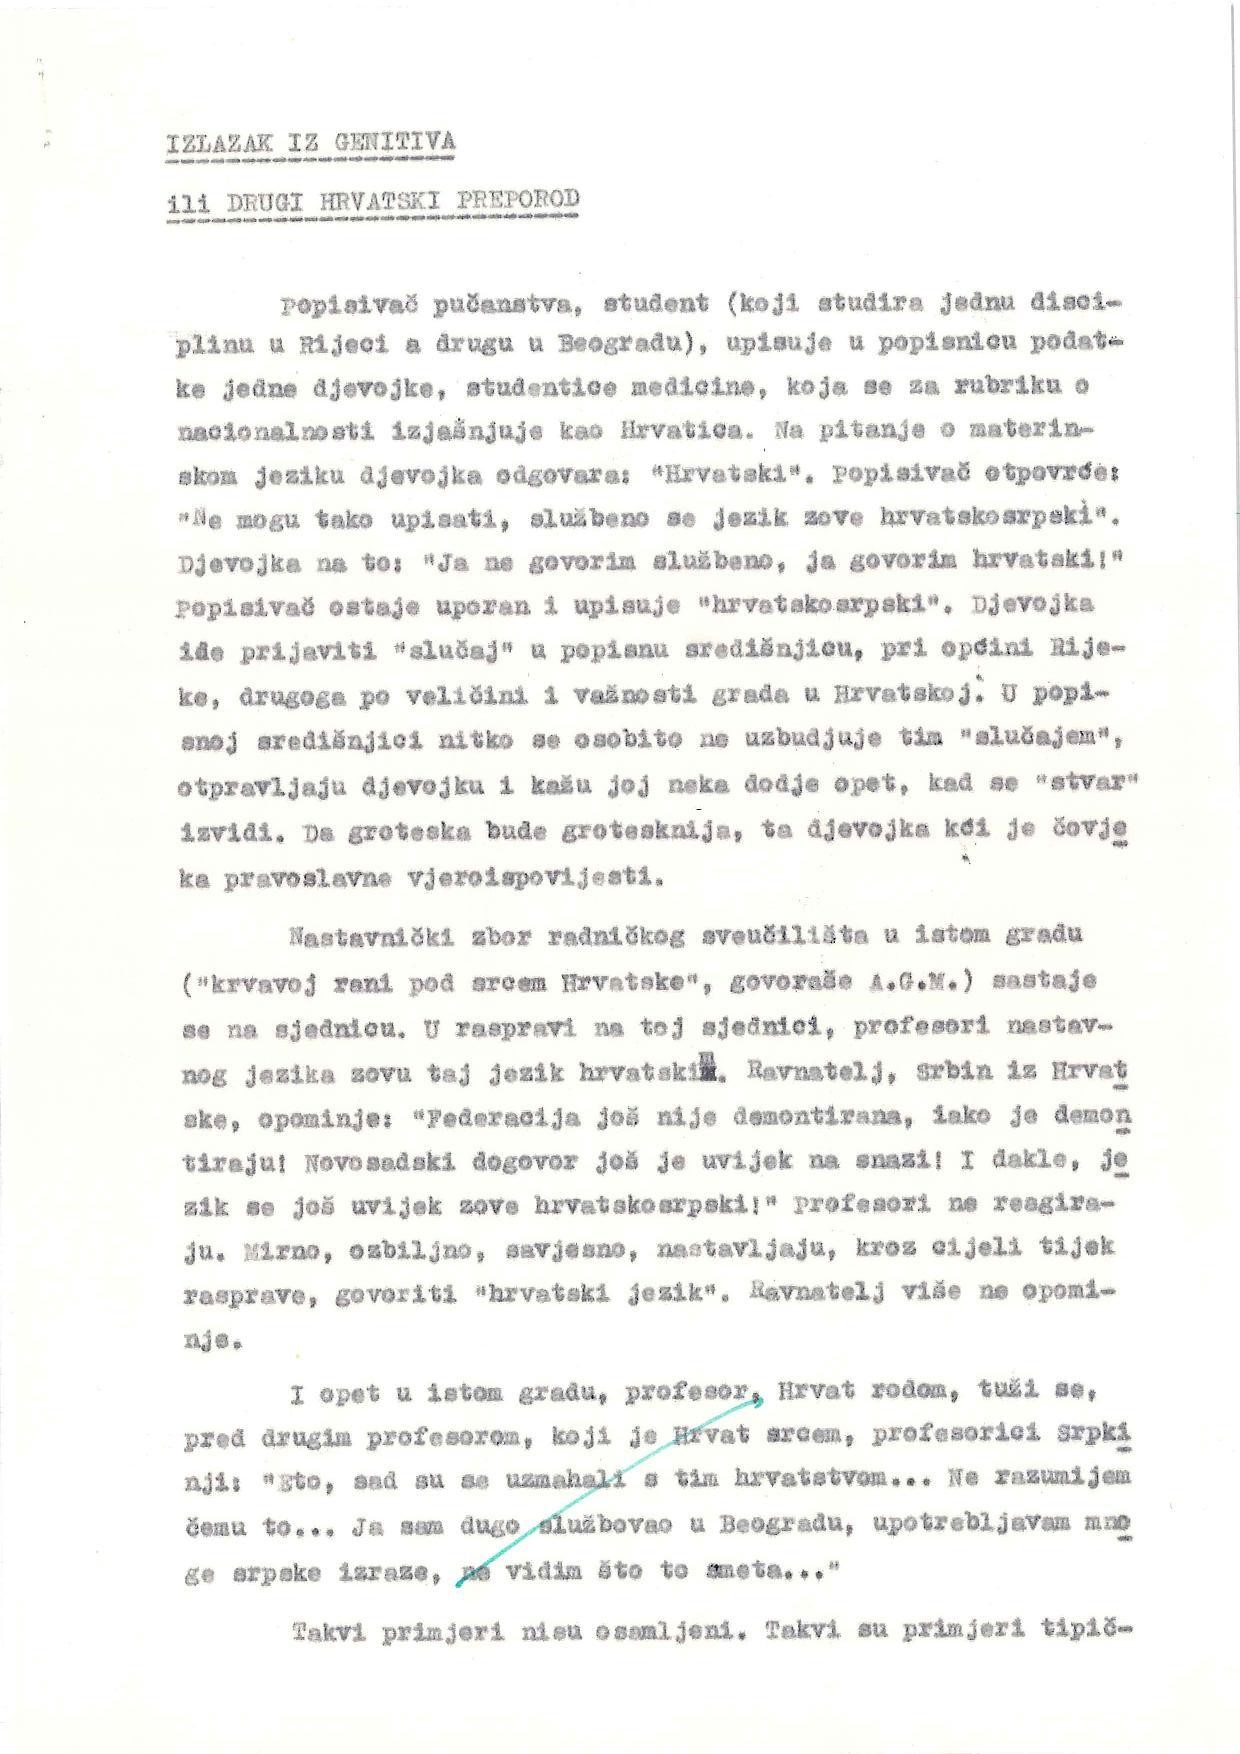 Rukopis članka Smiljane Rendić Izlazak iz genitiva ili drugi hrvatski preporod iz 1971. godine.